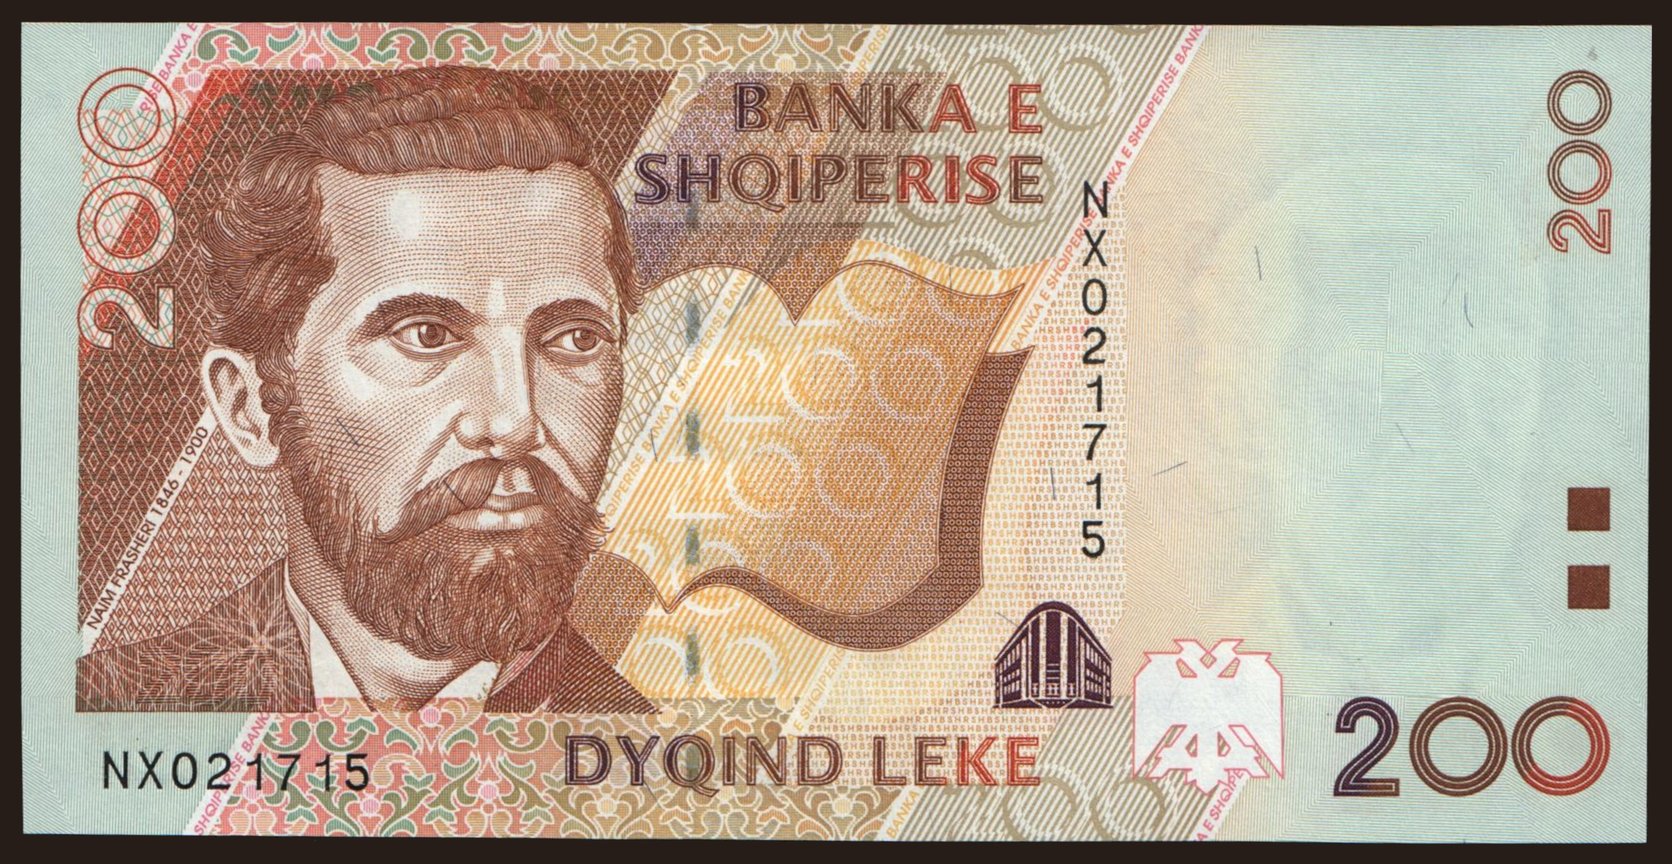 200 leke, 2001